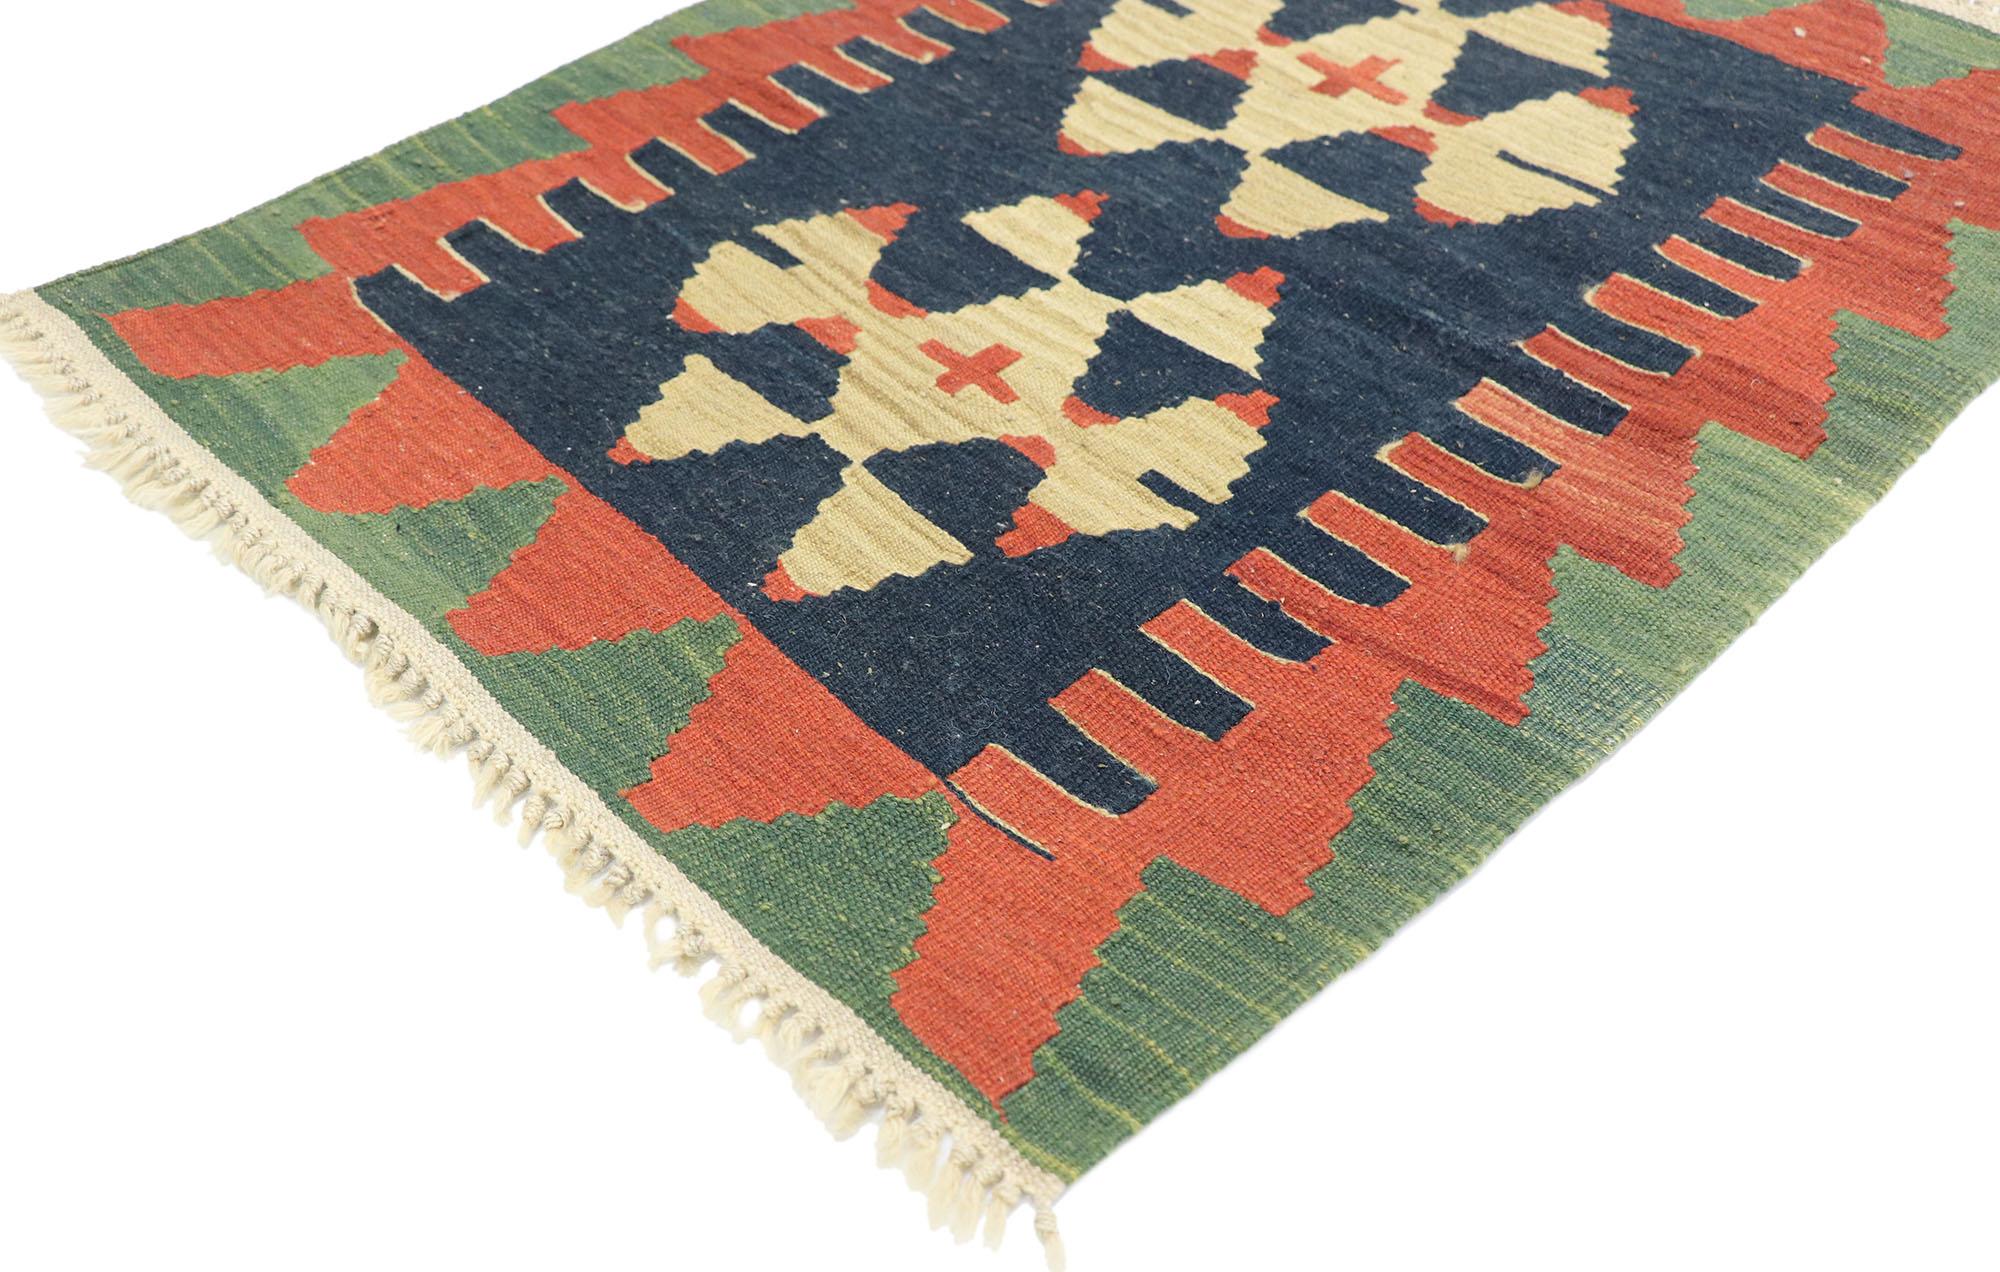 77891 Vieux tapis Persan Shiraz Kilim avec style Tribal 02'02 x 02'10. Plein de petits détails et un design expressif audacieux combiné avec des couleurs vibrantes et un style tribal, ce tapis kilim persan vintage en laine tissé à la main est une